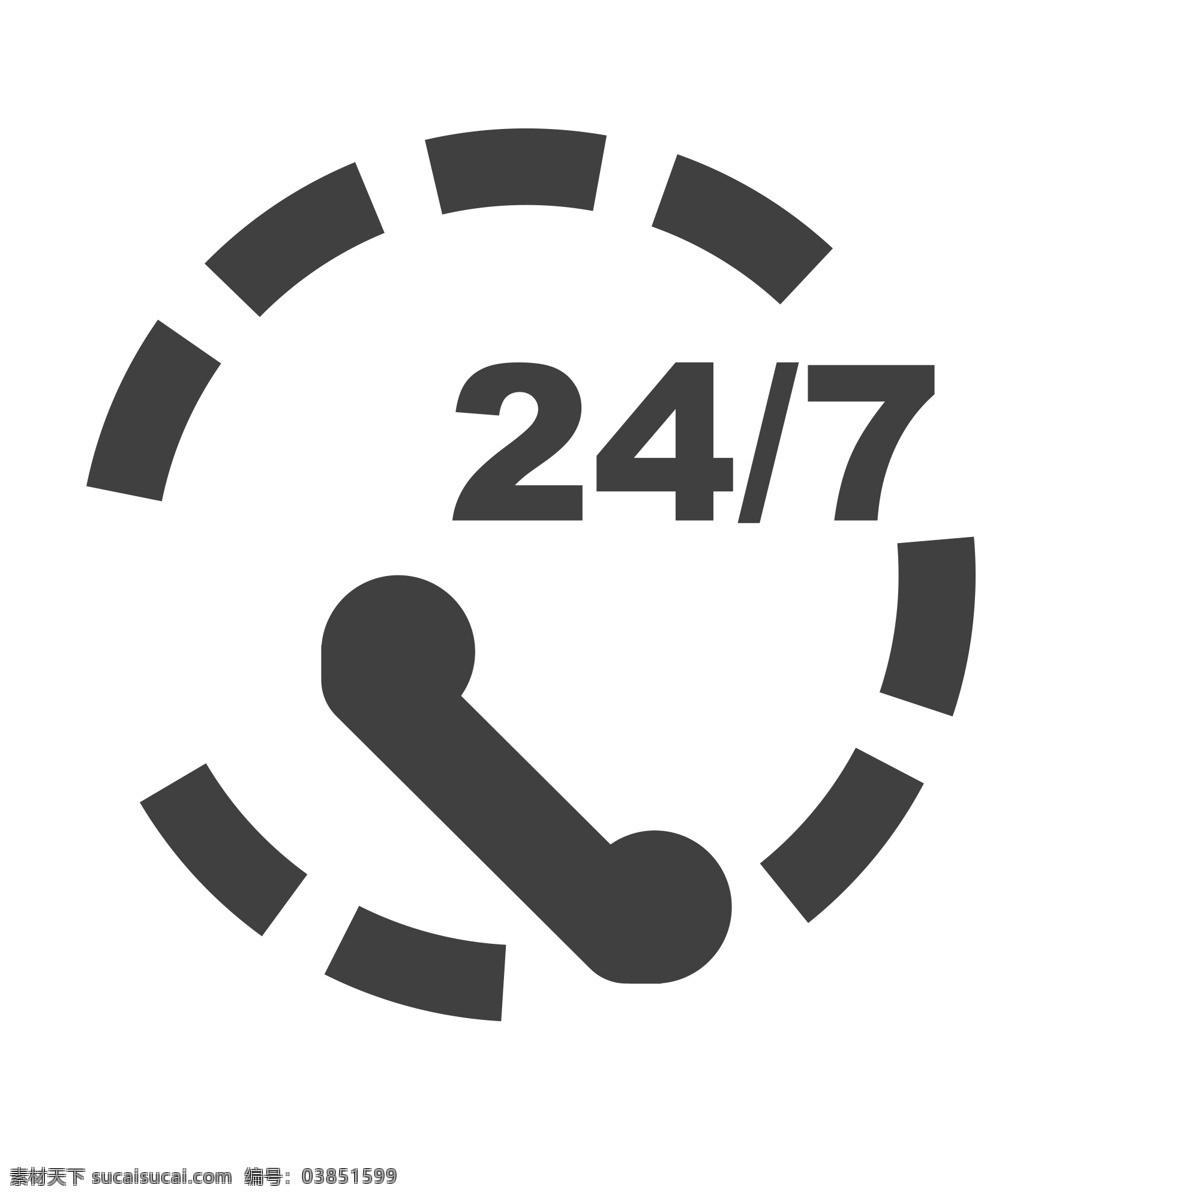 24小时服务 24小电话 扁平化ui ui图标 手机图标 界面ui 网页ui h5图标